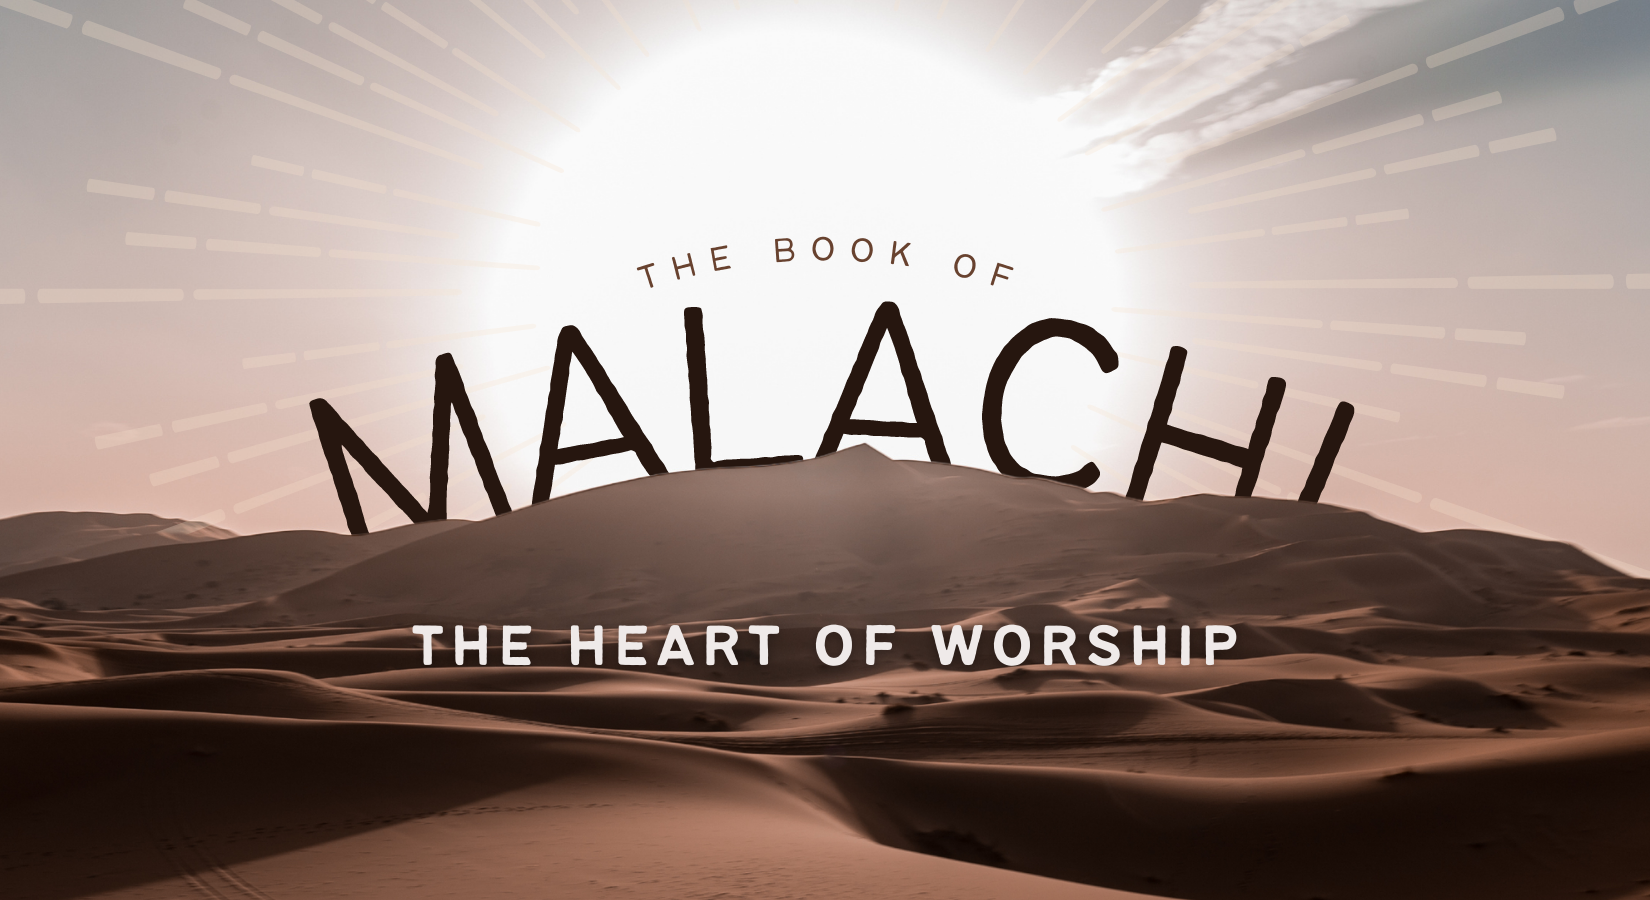 Malachi banner